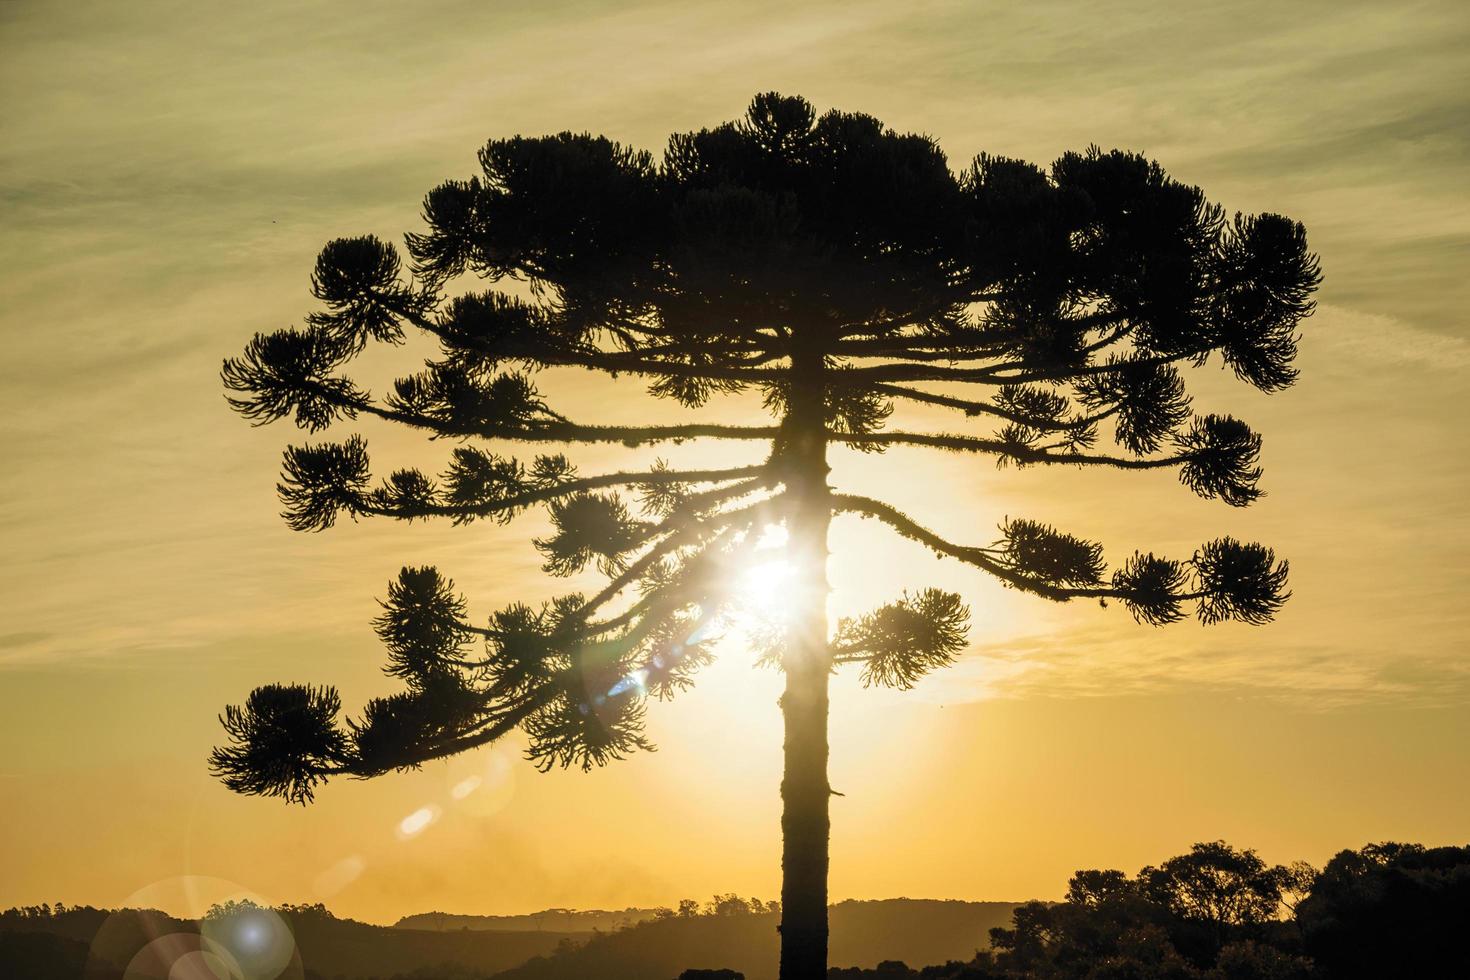 vue des branches supérieures d'une silhouette de pin au coucher du soleil, un arbre commun dans la région rurale de bento goncalves. une ville de campagne dans le sud du brésil célèbre pour sa production de vin. photo retouchée.